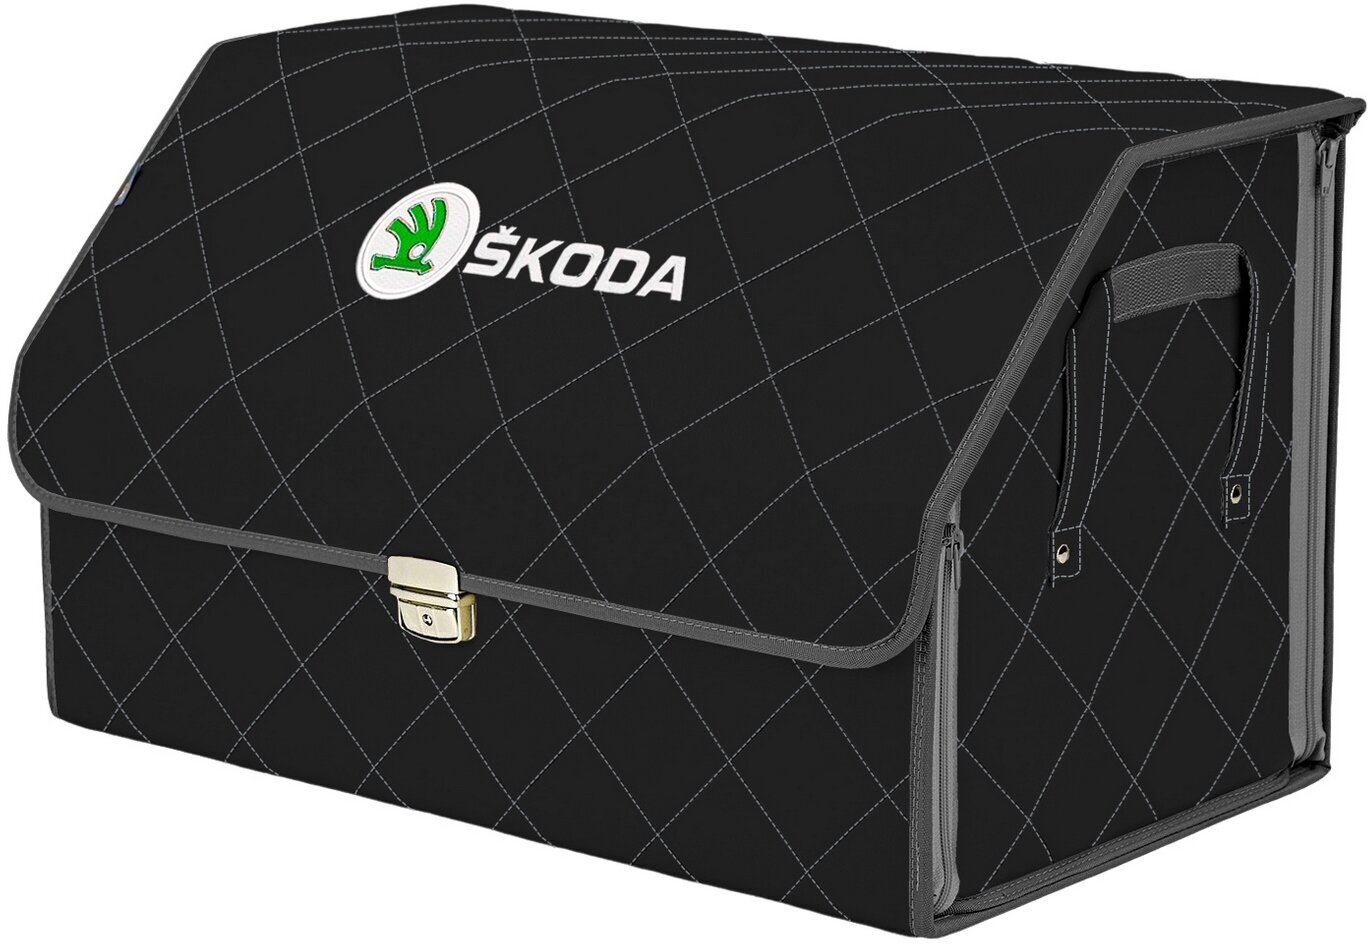 Органайзер-саквояж в багажник "Союз Премиум" (размер XL). Цвет: черный с серой прострочкой Ромб и вышивкой Skoda (Шкода).